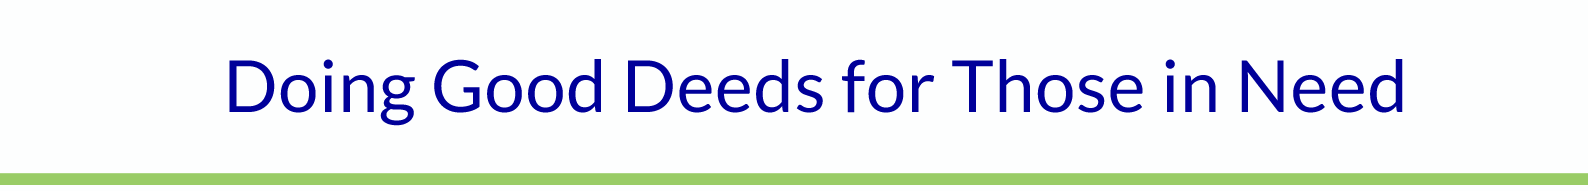 Deeds For Needs Inc